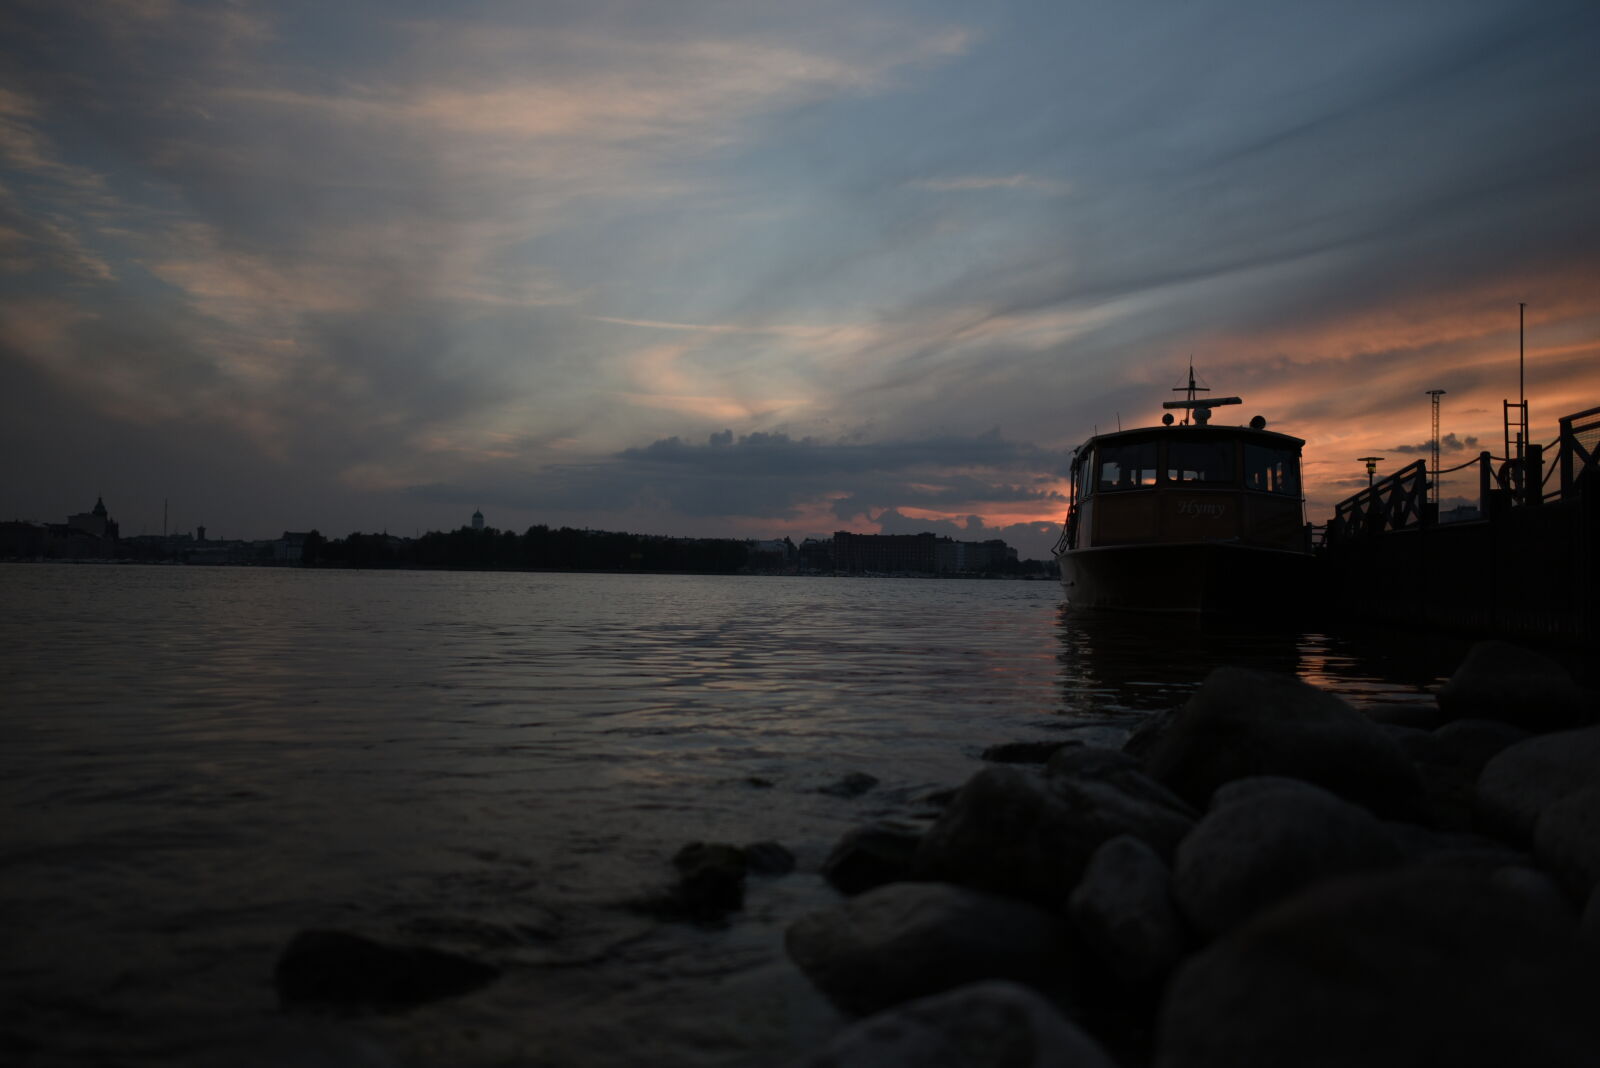 Nikon AF-S Nikkor 28mm F1.8G sample photo. Boat of dusk photography